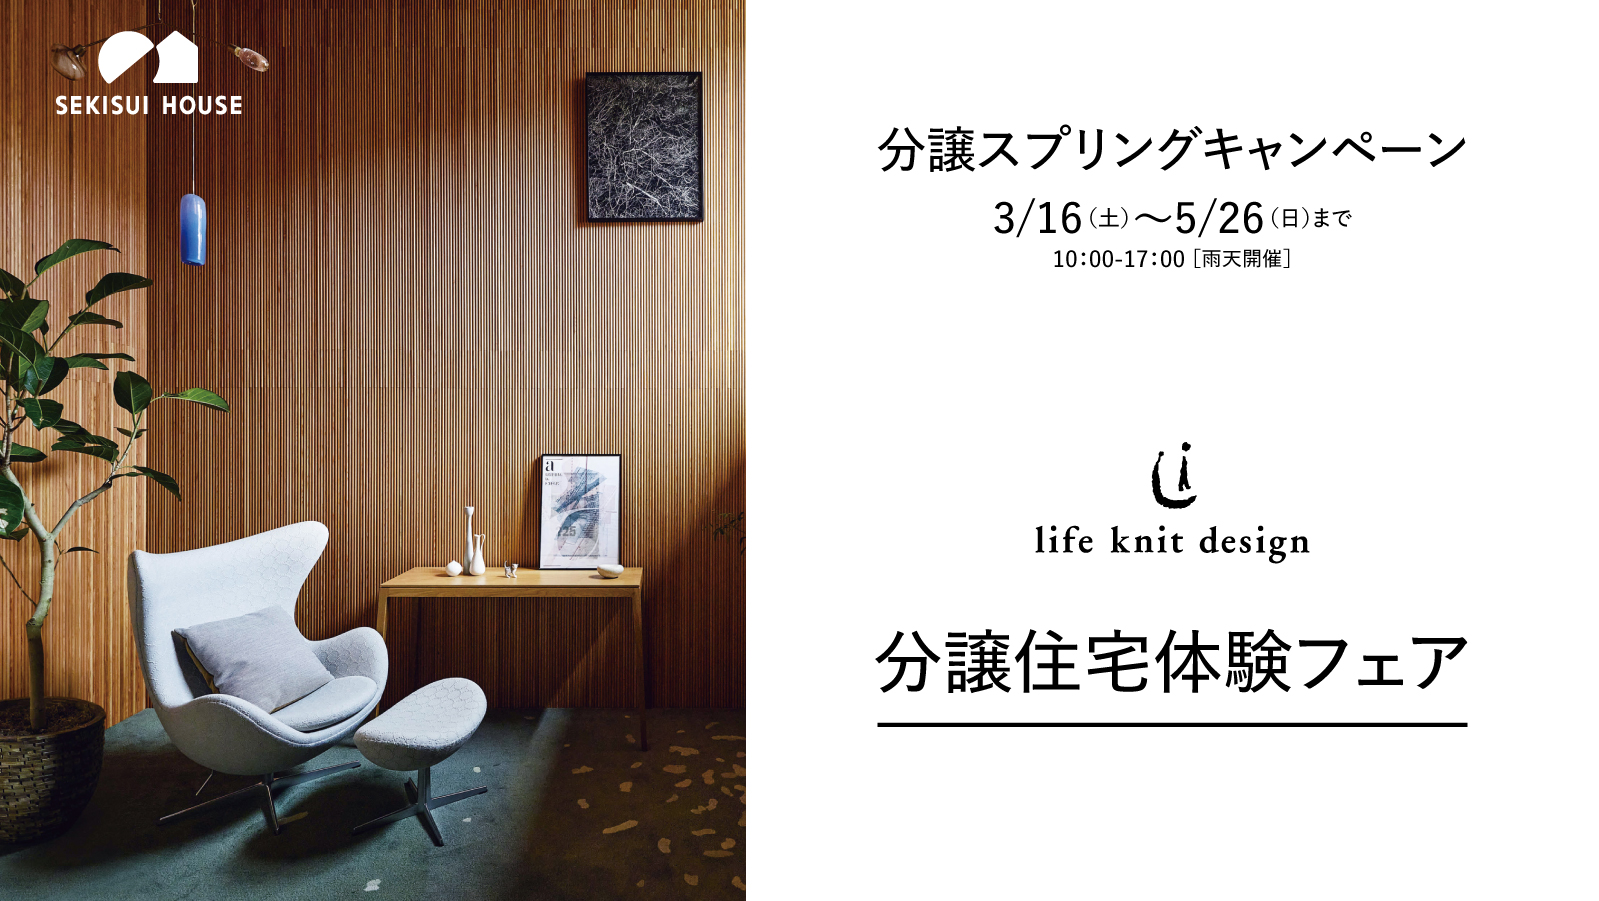 分譲スプリングキャンペーン 3/16(土)〜5-26(日)まで life knit design 分譲住宅体験フェア